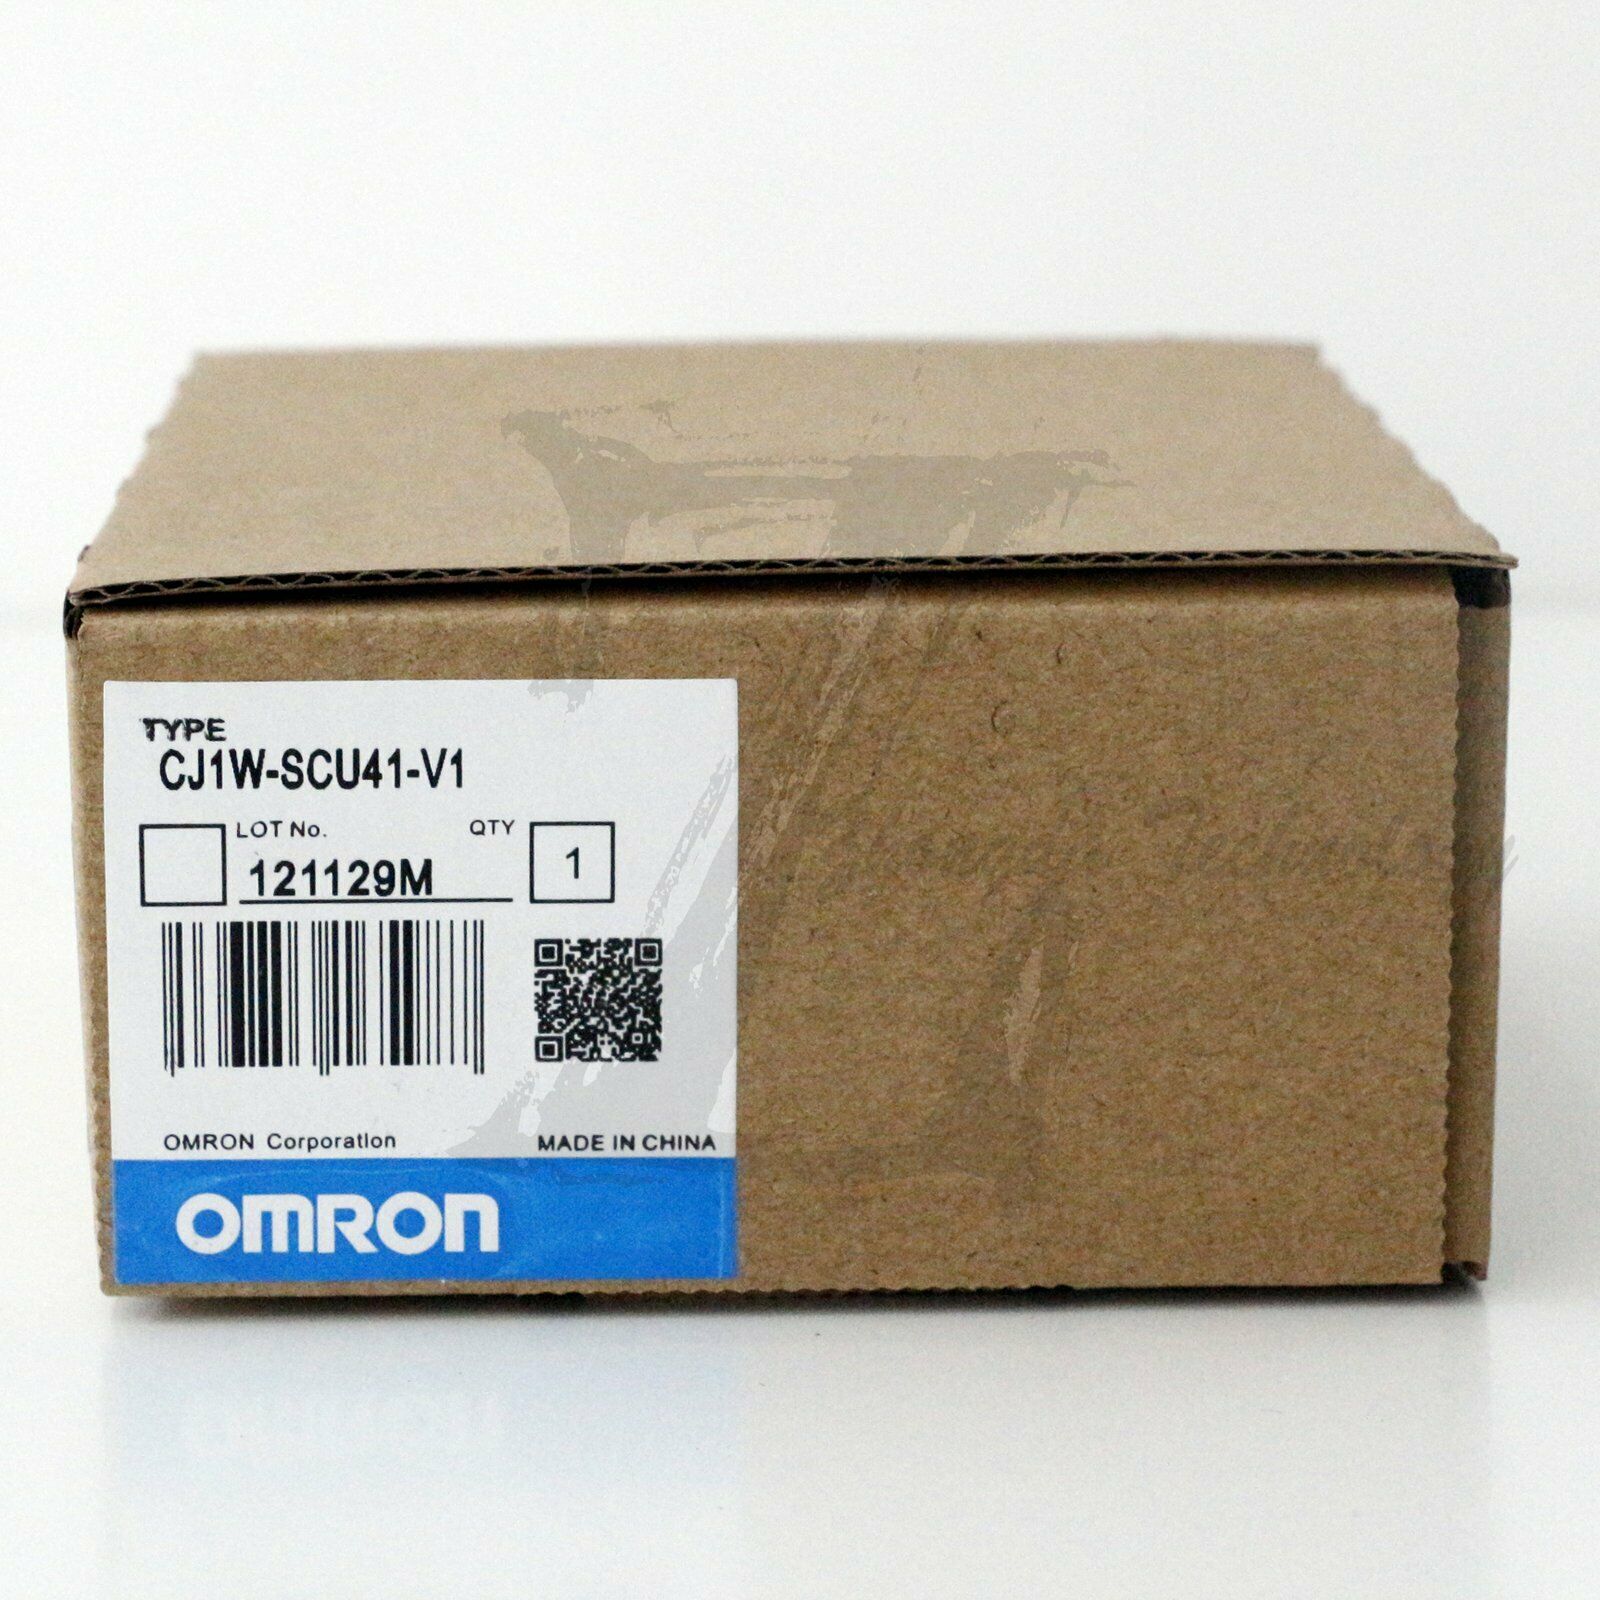 1PCS New In Box Omron PLC Module CJ1W-SCU41-V1 CJ1WSCU41V1 One year warranty KOEED 201-500, 80%, import_2020_10_10_031751, OMRON, Other